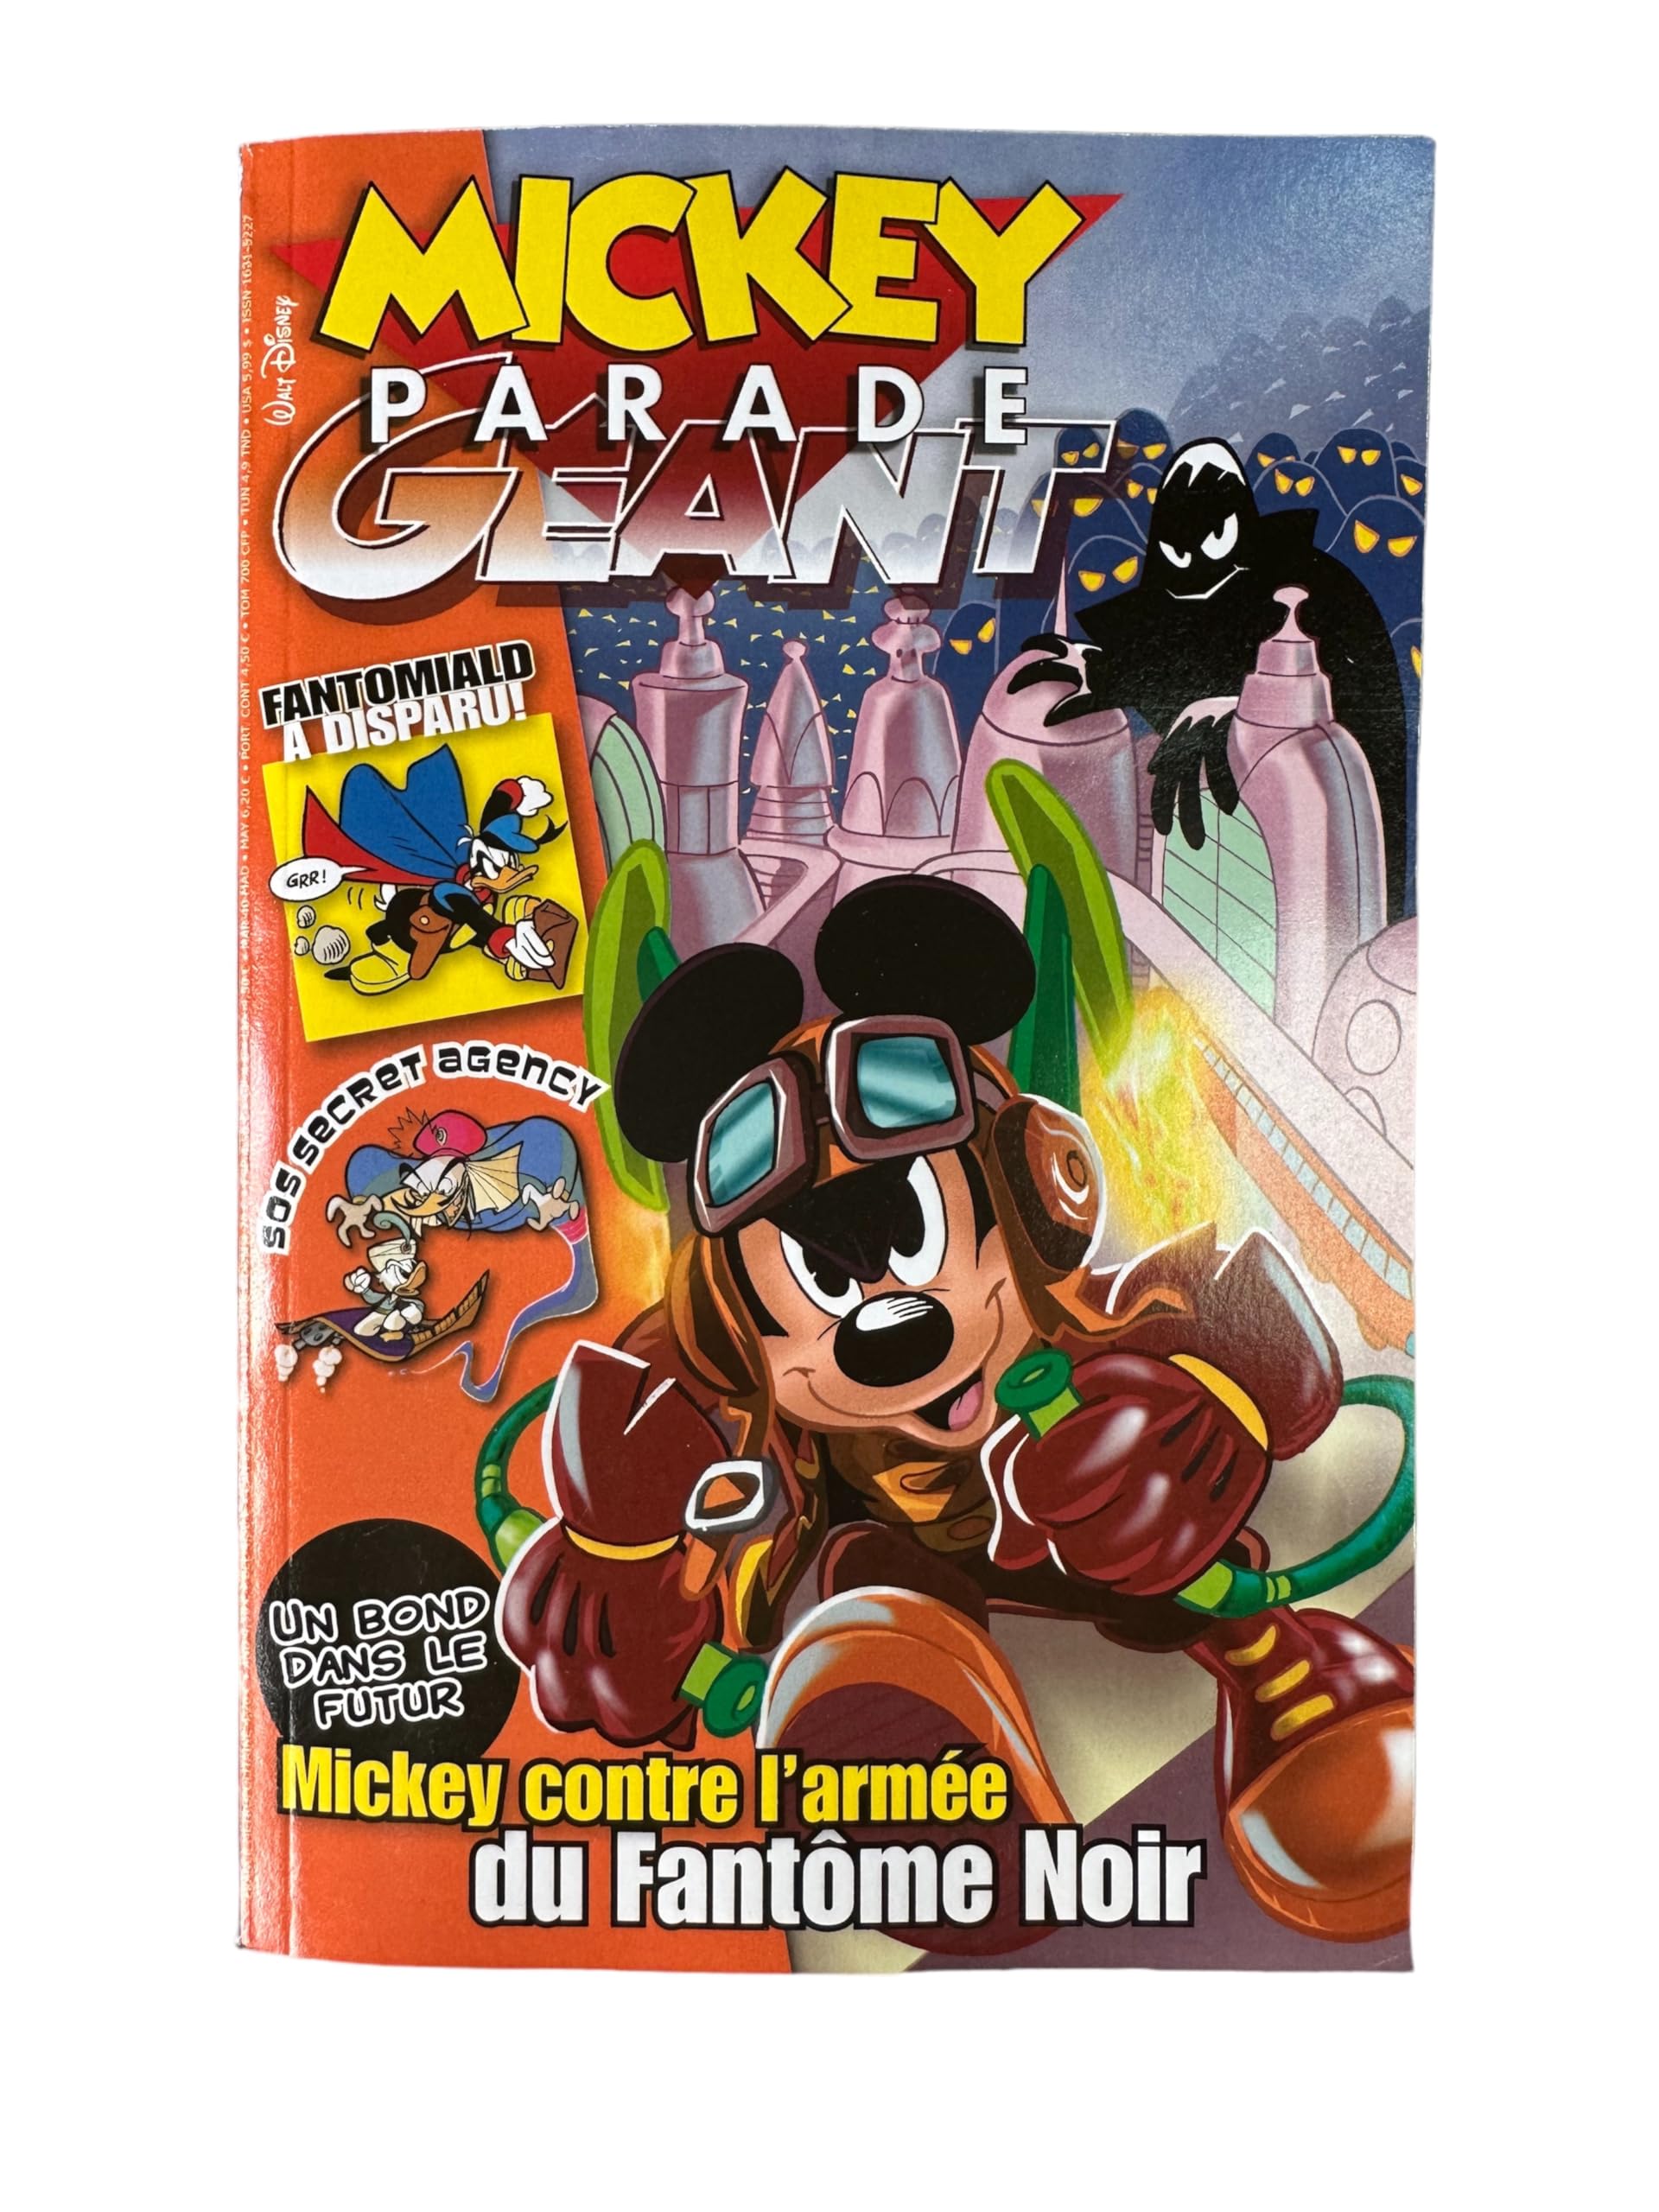 Mickey Parade Géant Numéro 332 : Mickey contre l'armée du fantôme noir